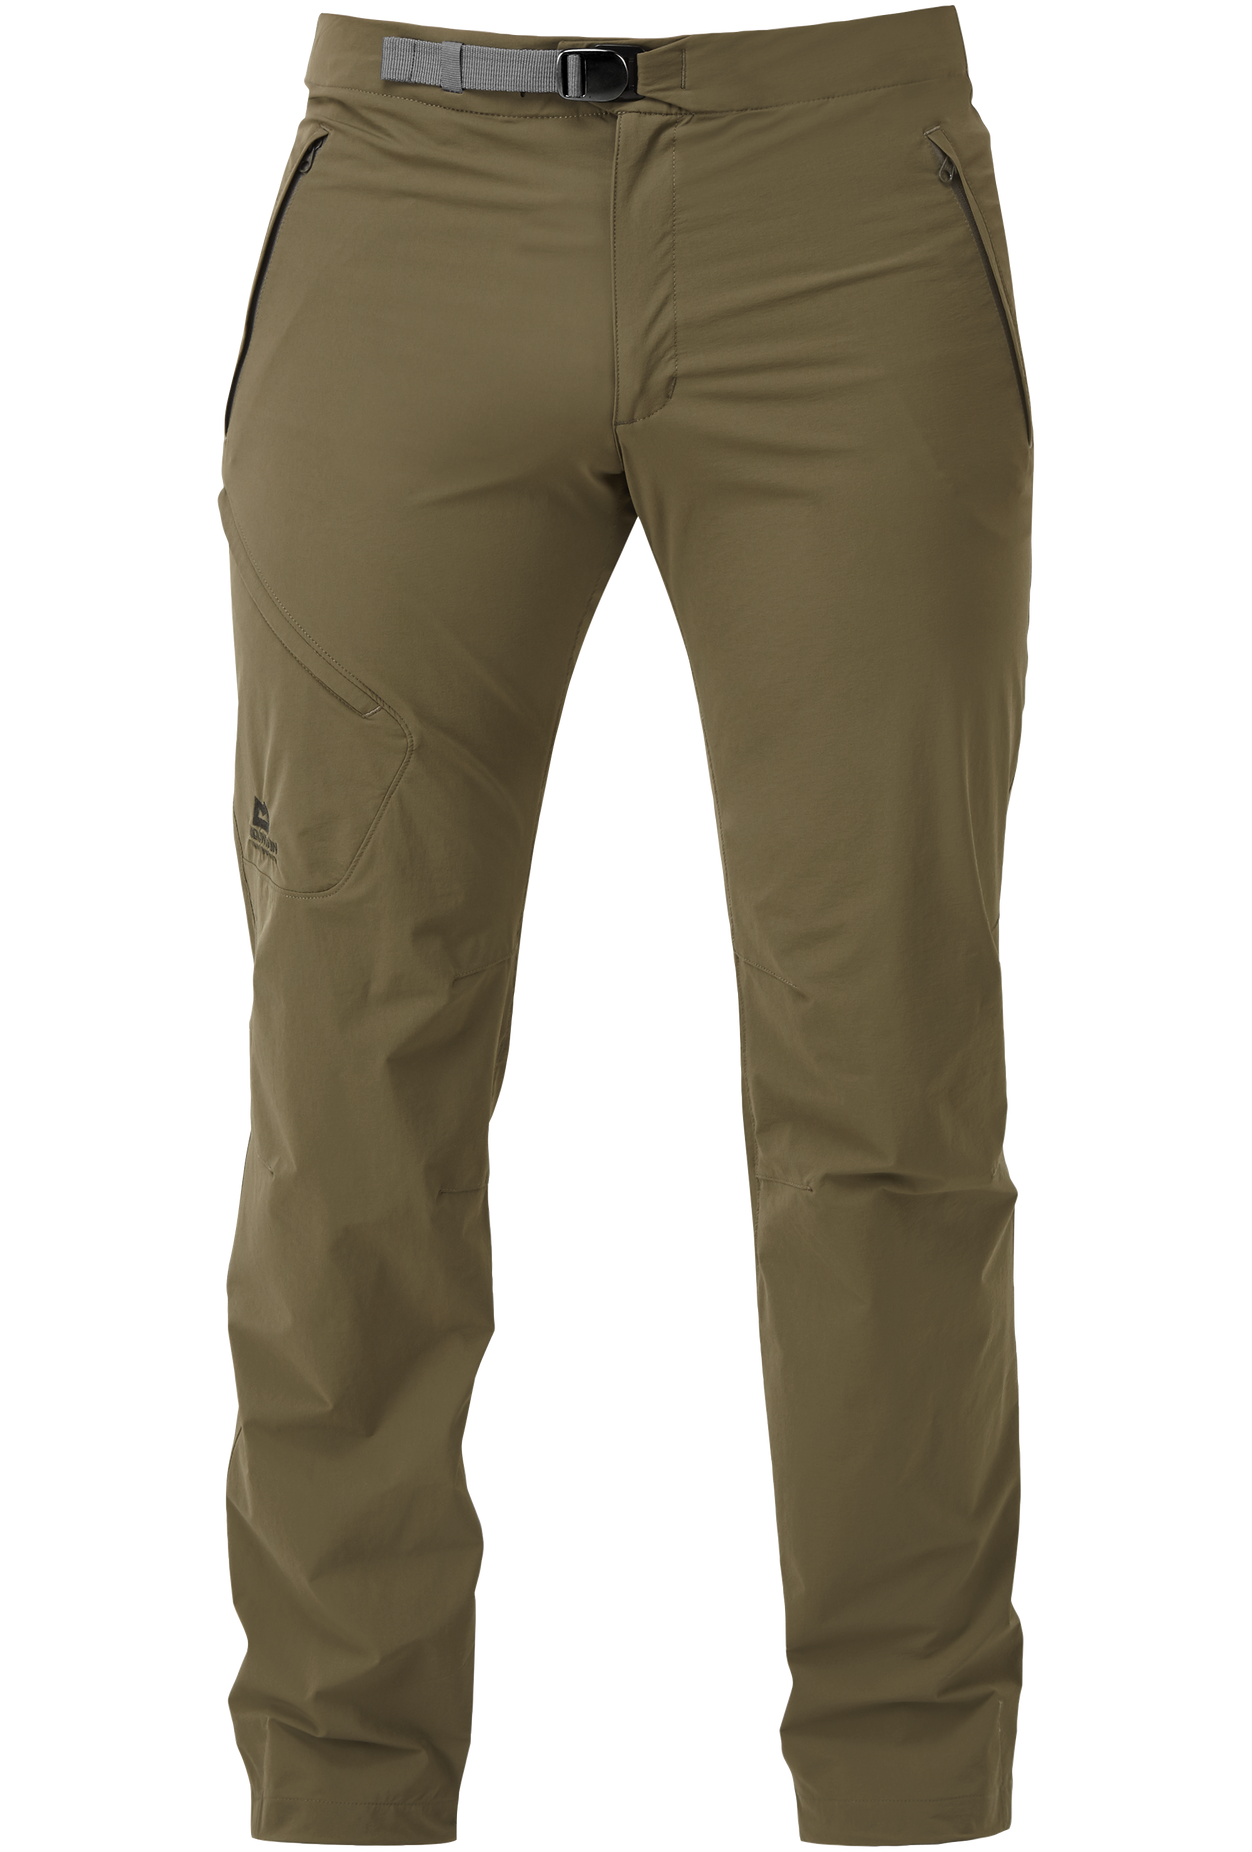 Mountain Equipment pánské softshellové kalhoty Comici Pant - zkrácené Barva: Mudstone, Velikost: 32/M